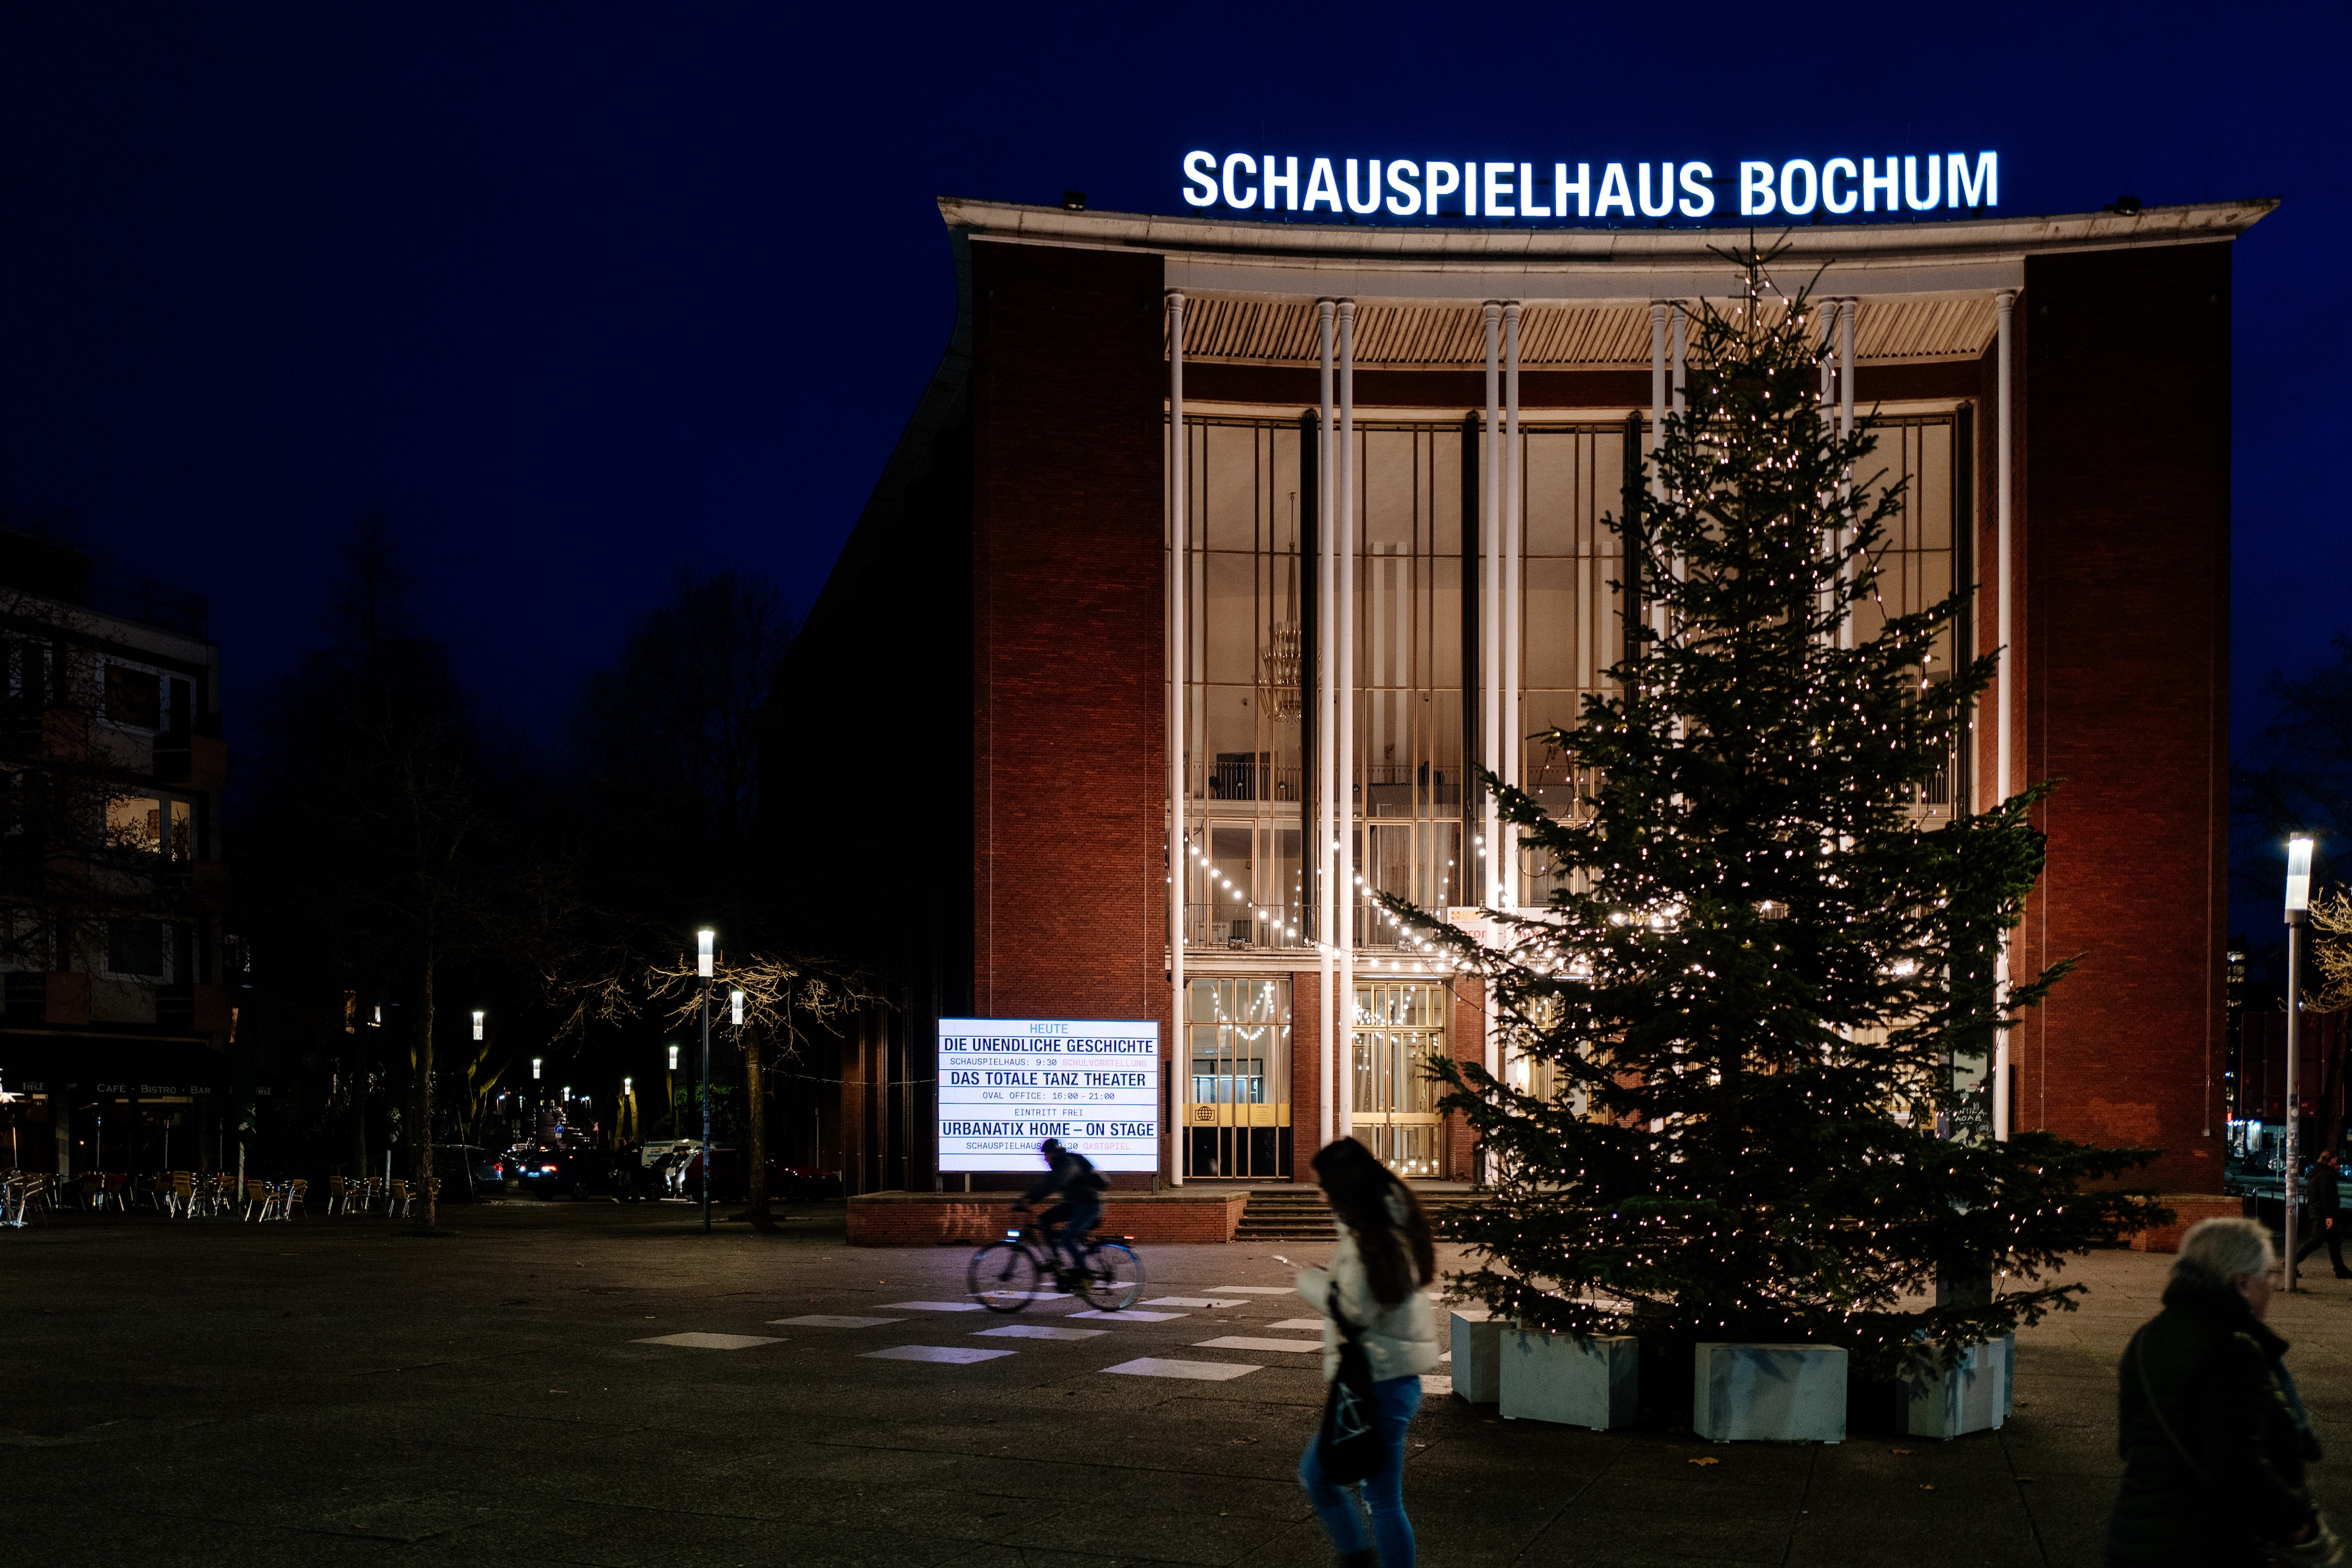 Schauspielhaus Bochum im Bochumer Ehrenfeld zur Weihnachtszeit - am Tag einer Vorstellung von "Urbanatix HOME - On Stage" (Foto: © Tim Kramer)